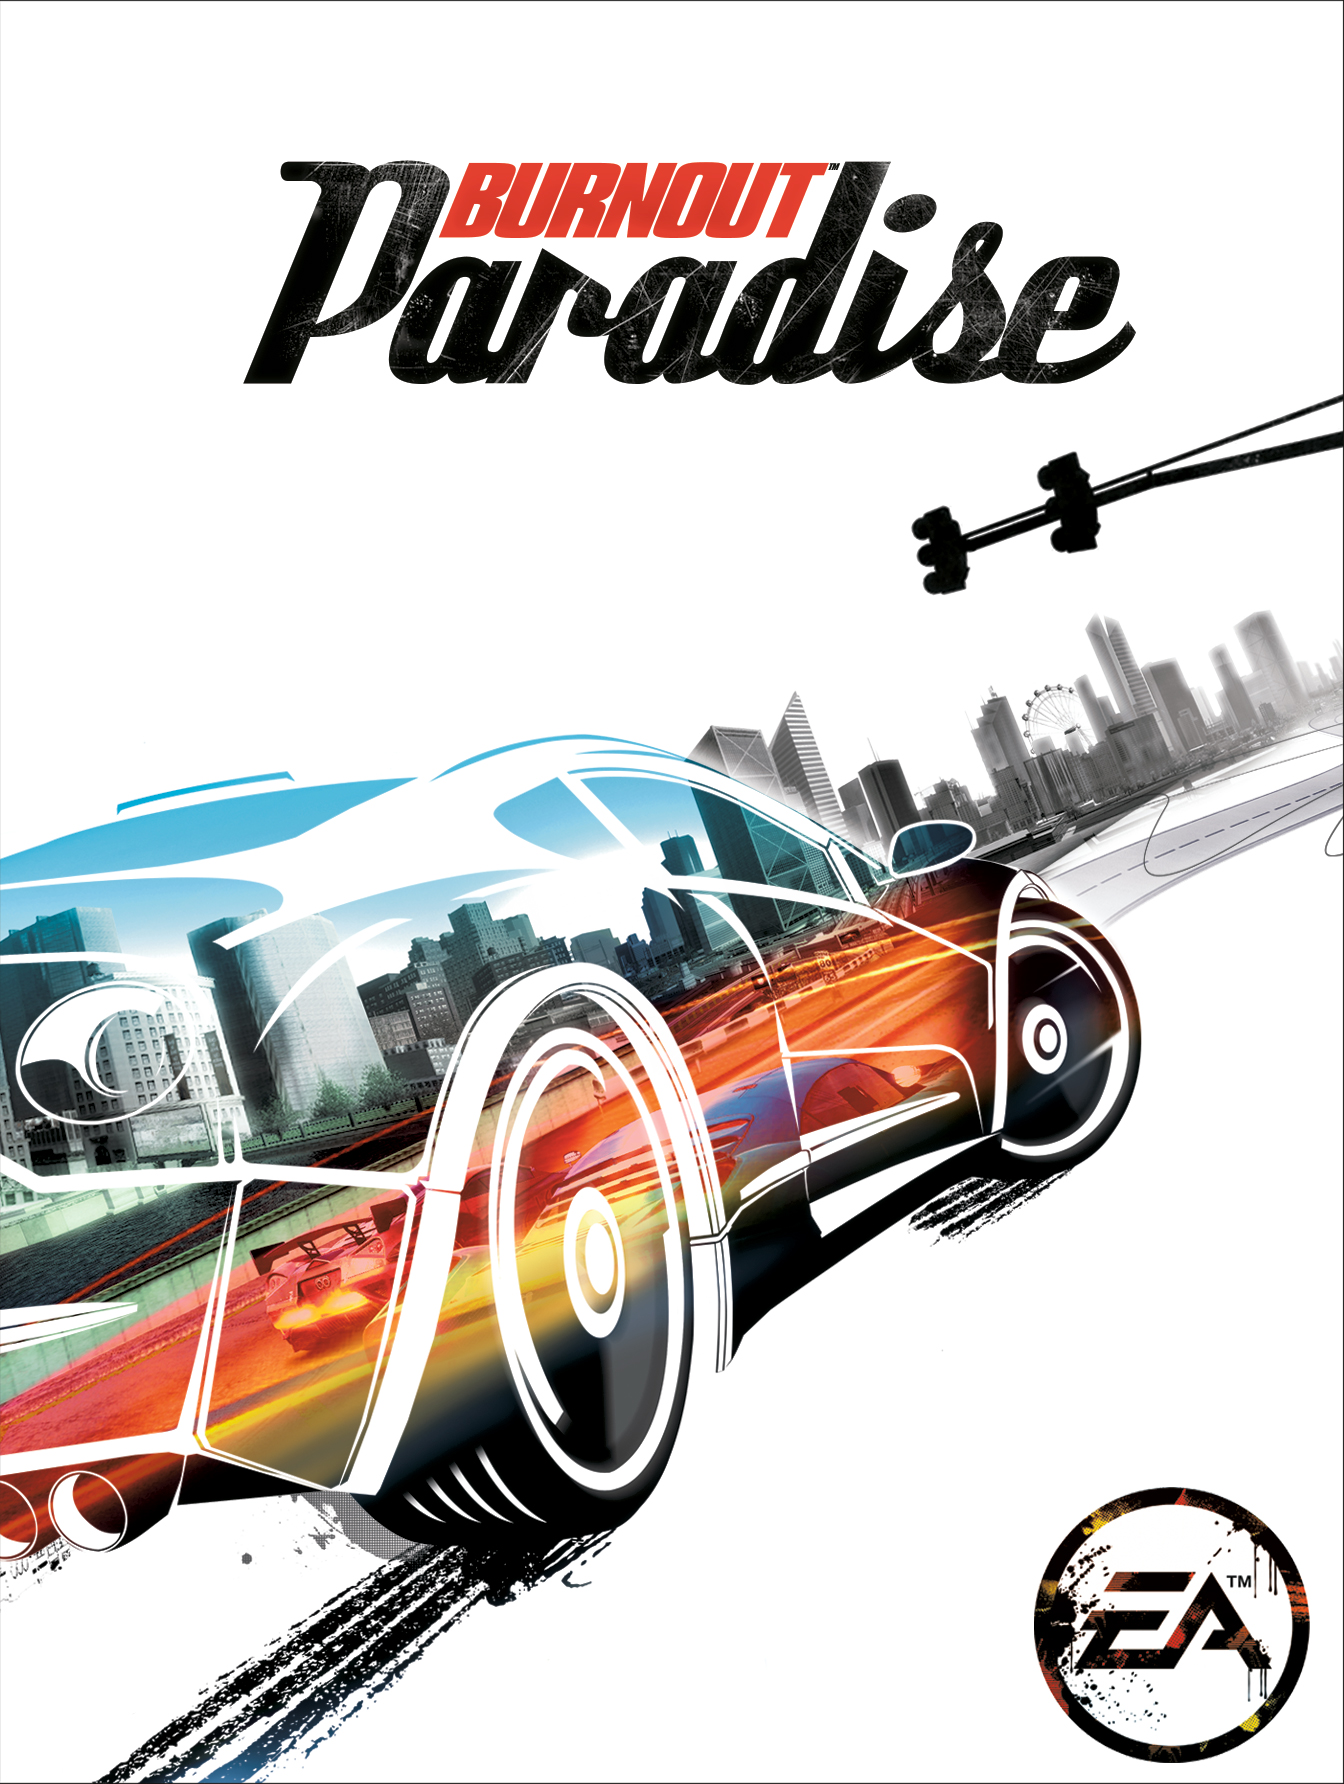 Burnout paradise mac free download windows 10